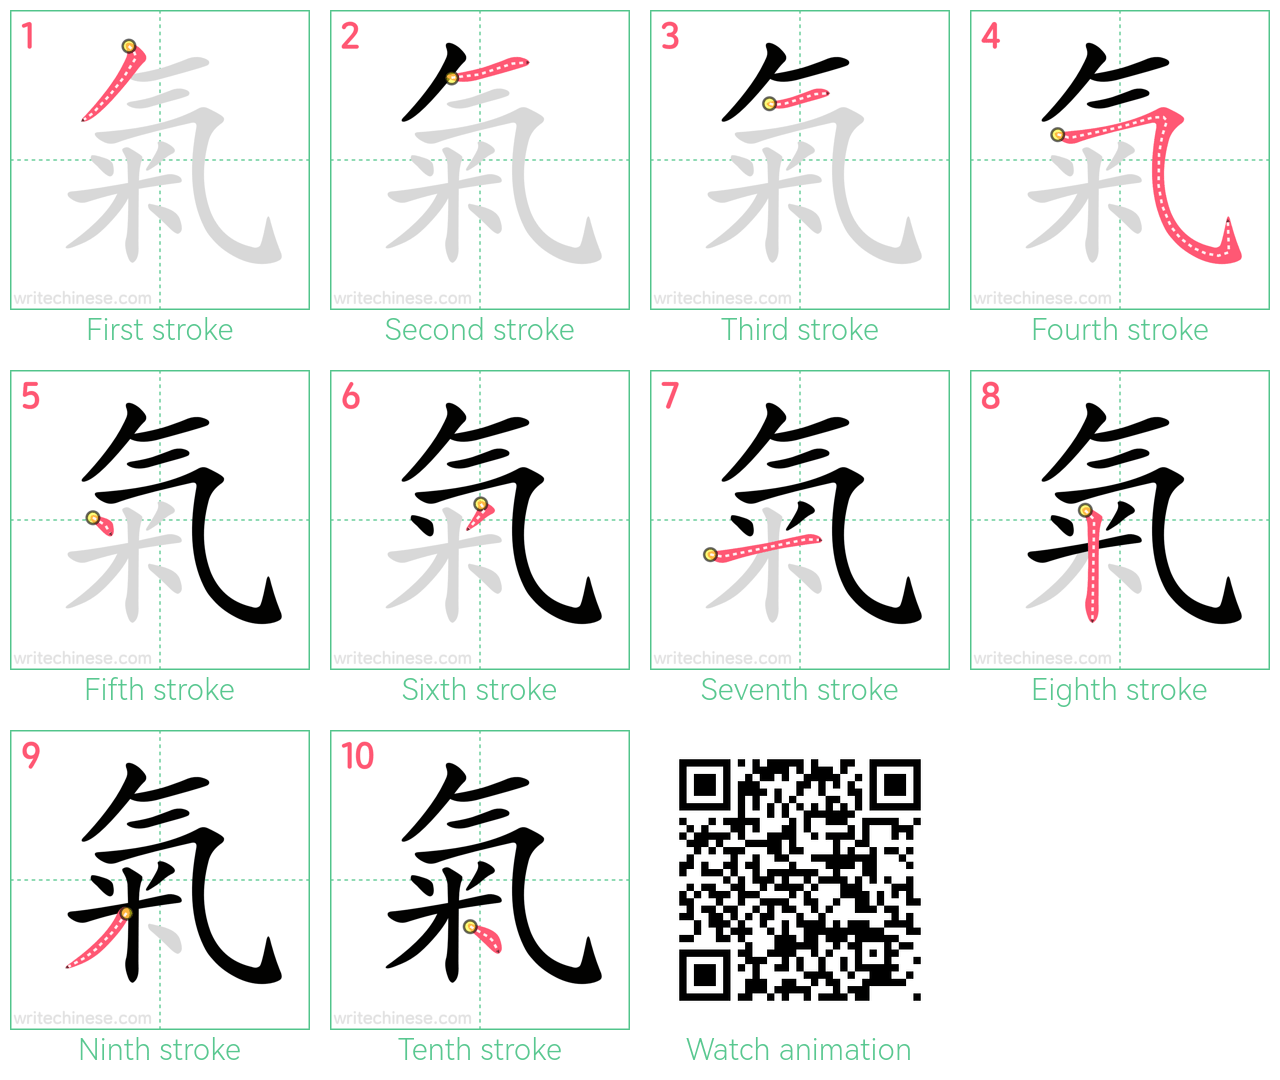 氣 step-by-step stroke order diagrams